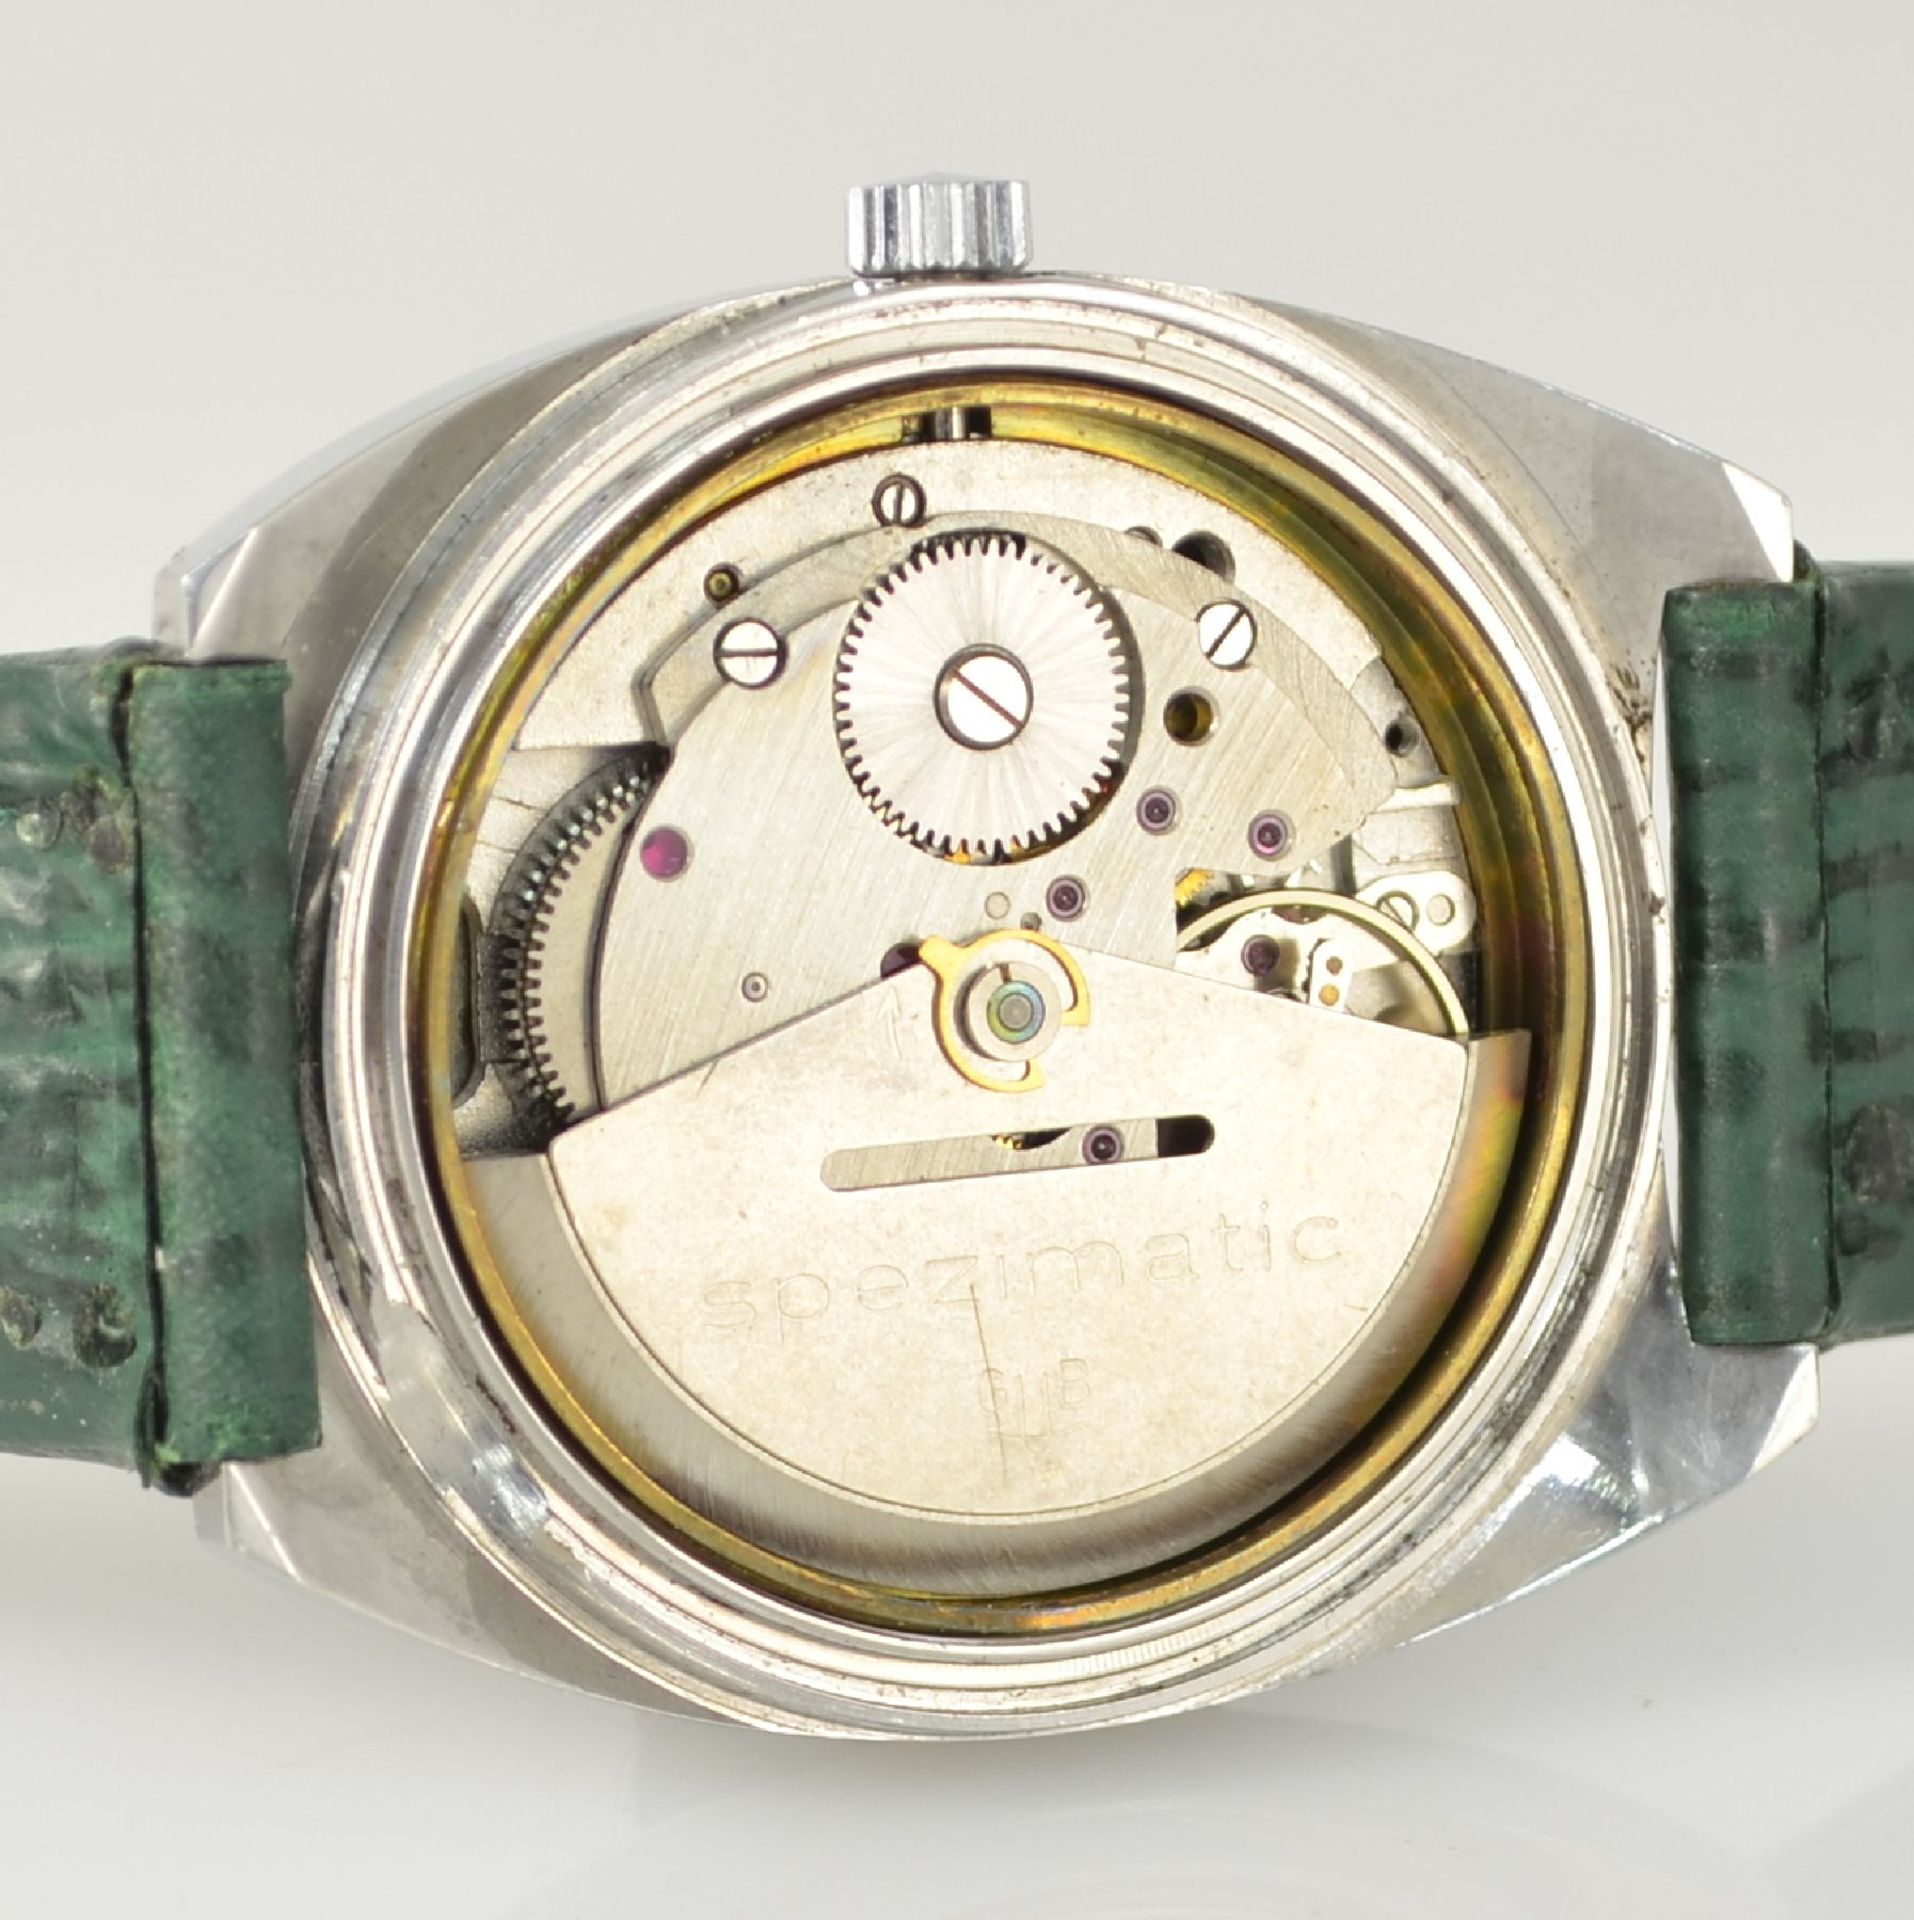 GLASHÜTTE Armbanduhr Spezimatic in Edelstahl, Automatik, DDR um 1970, Boden aufgedr., ausgef. grünes - Bild 6 aus 6